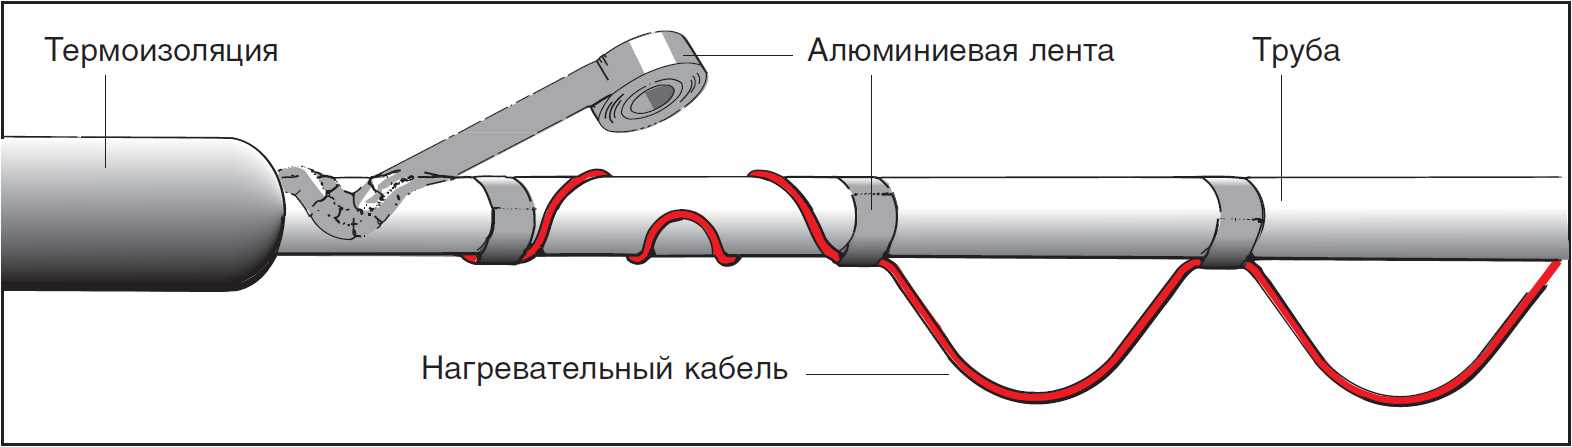 Греющий кабель для водопровода, монтаж и подключение своими руками